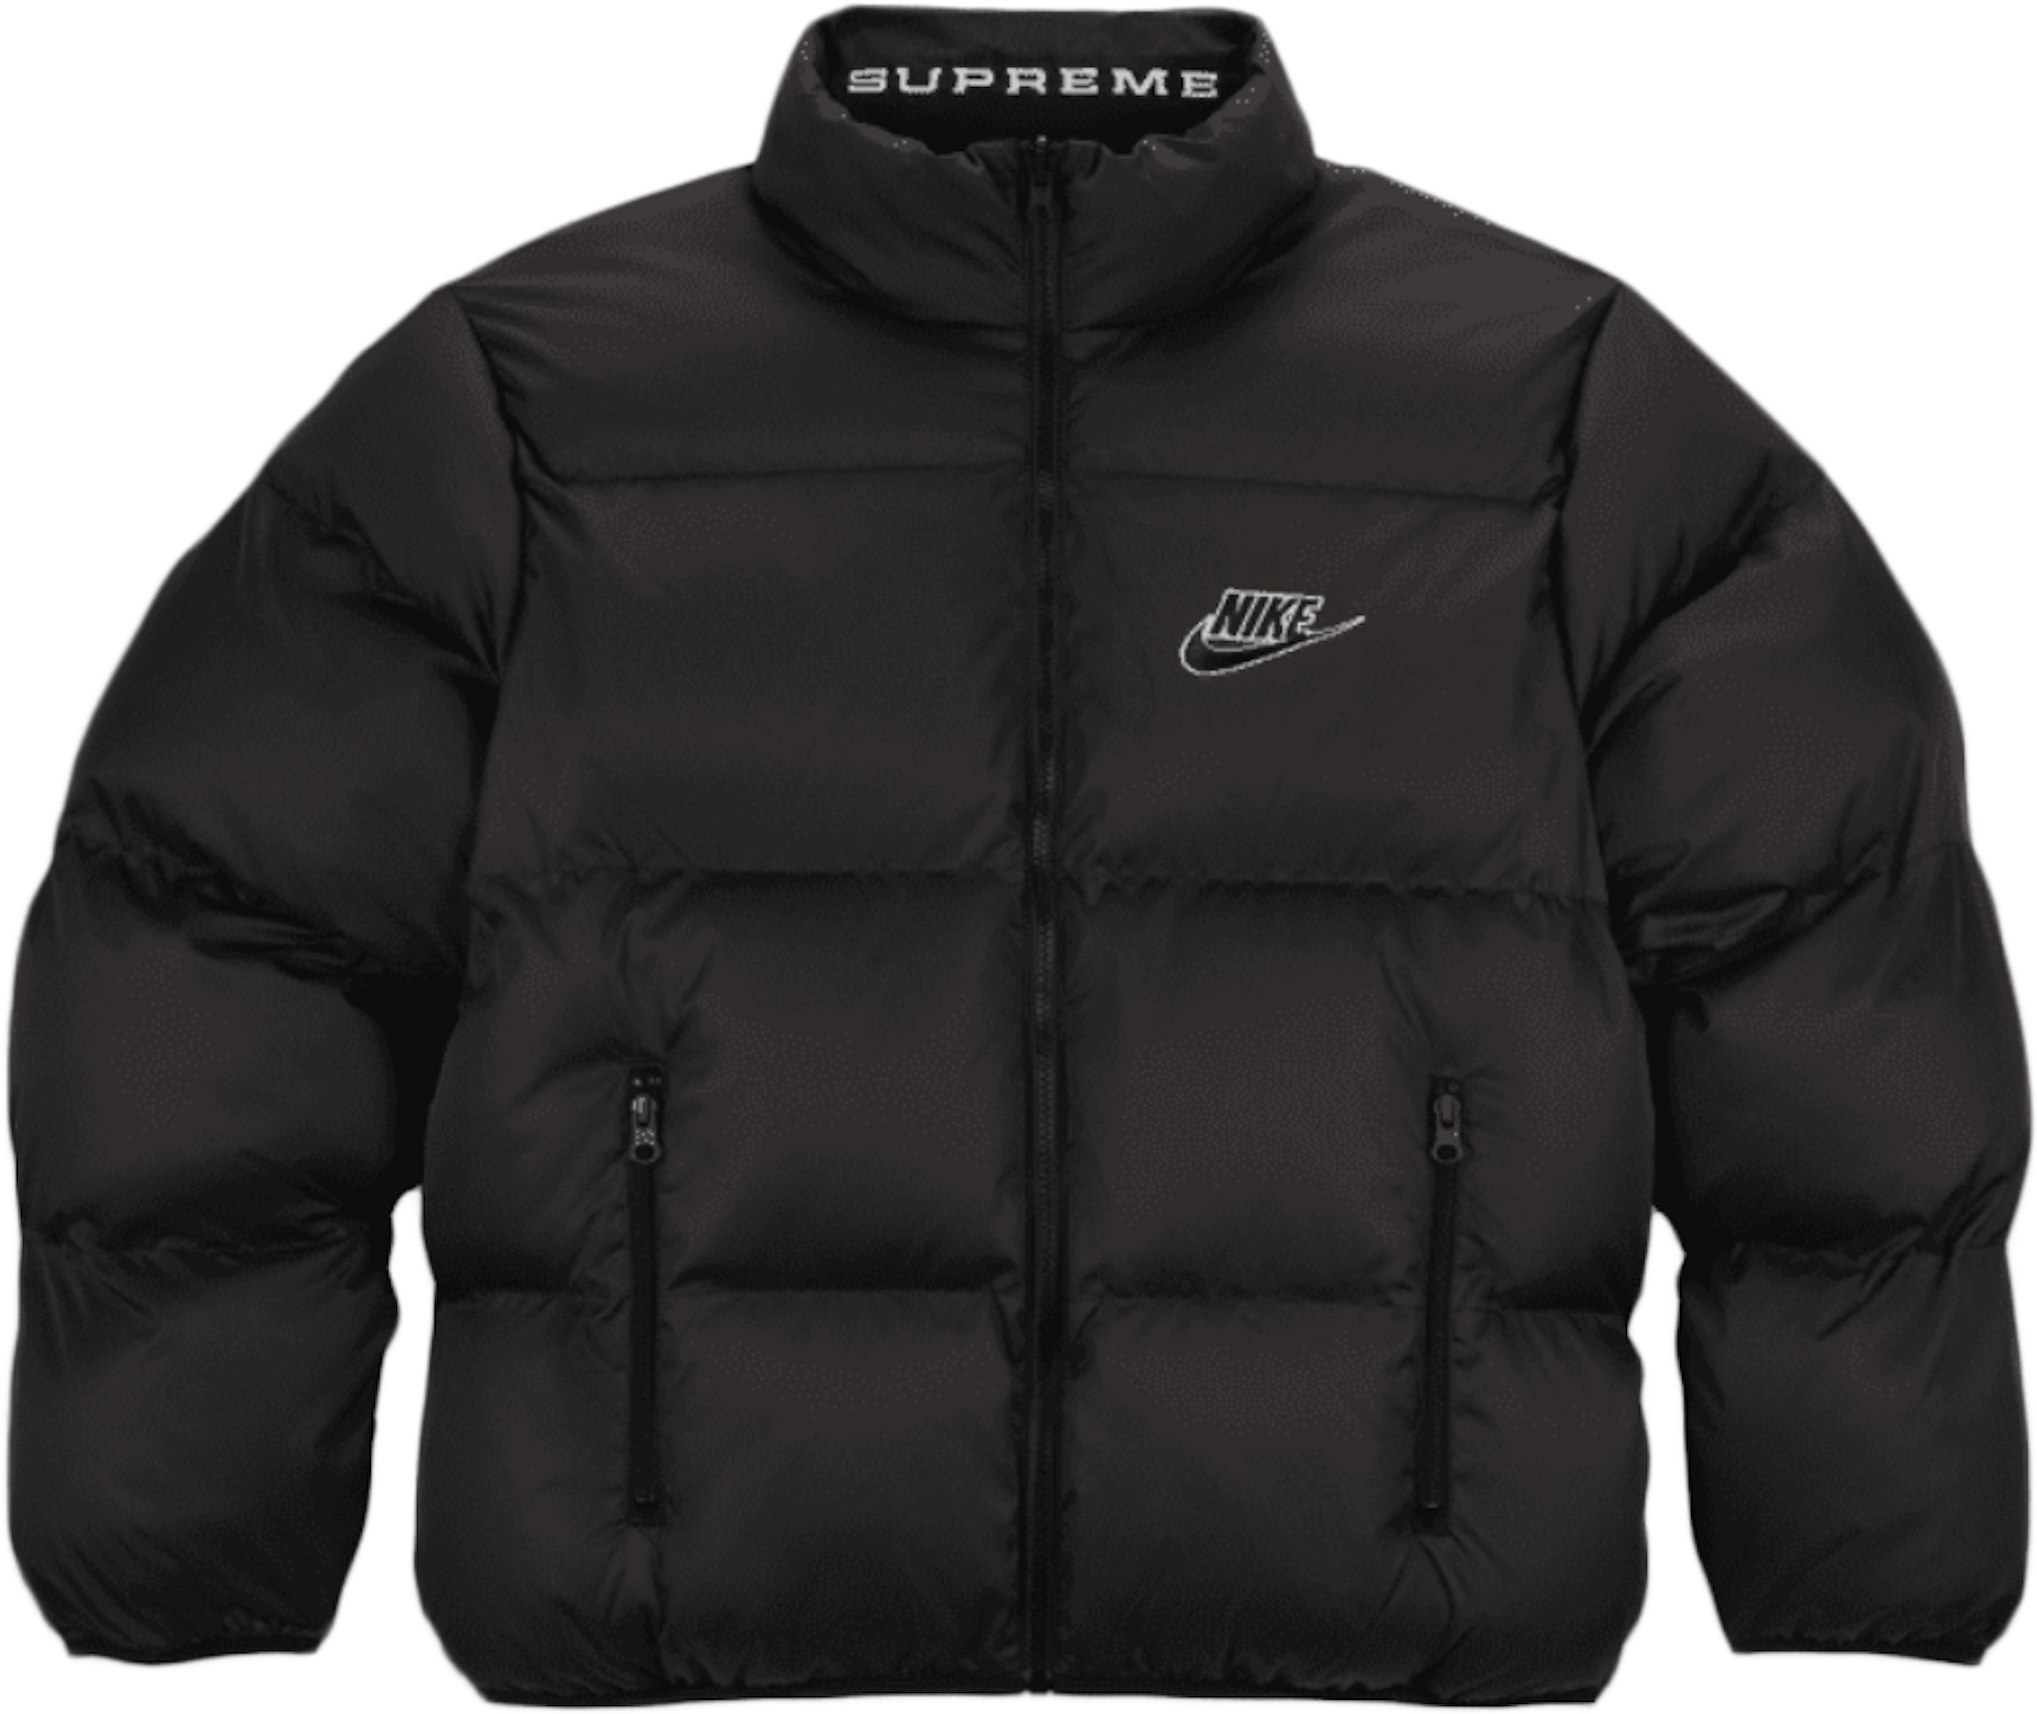 Desafío Diálogo pozo Supreme Nike Reversible Puffy Jacket Black - SS21 Men's - US